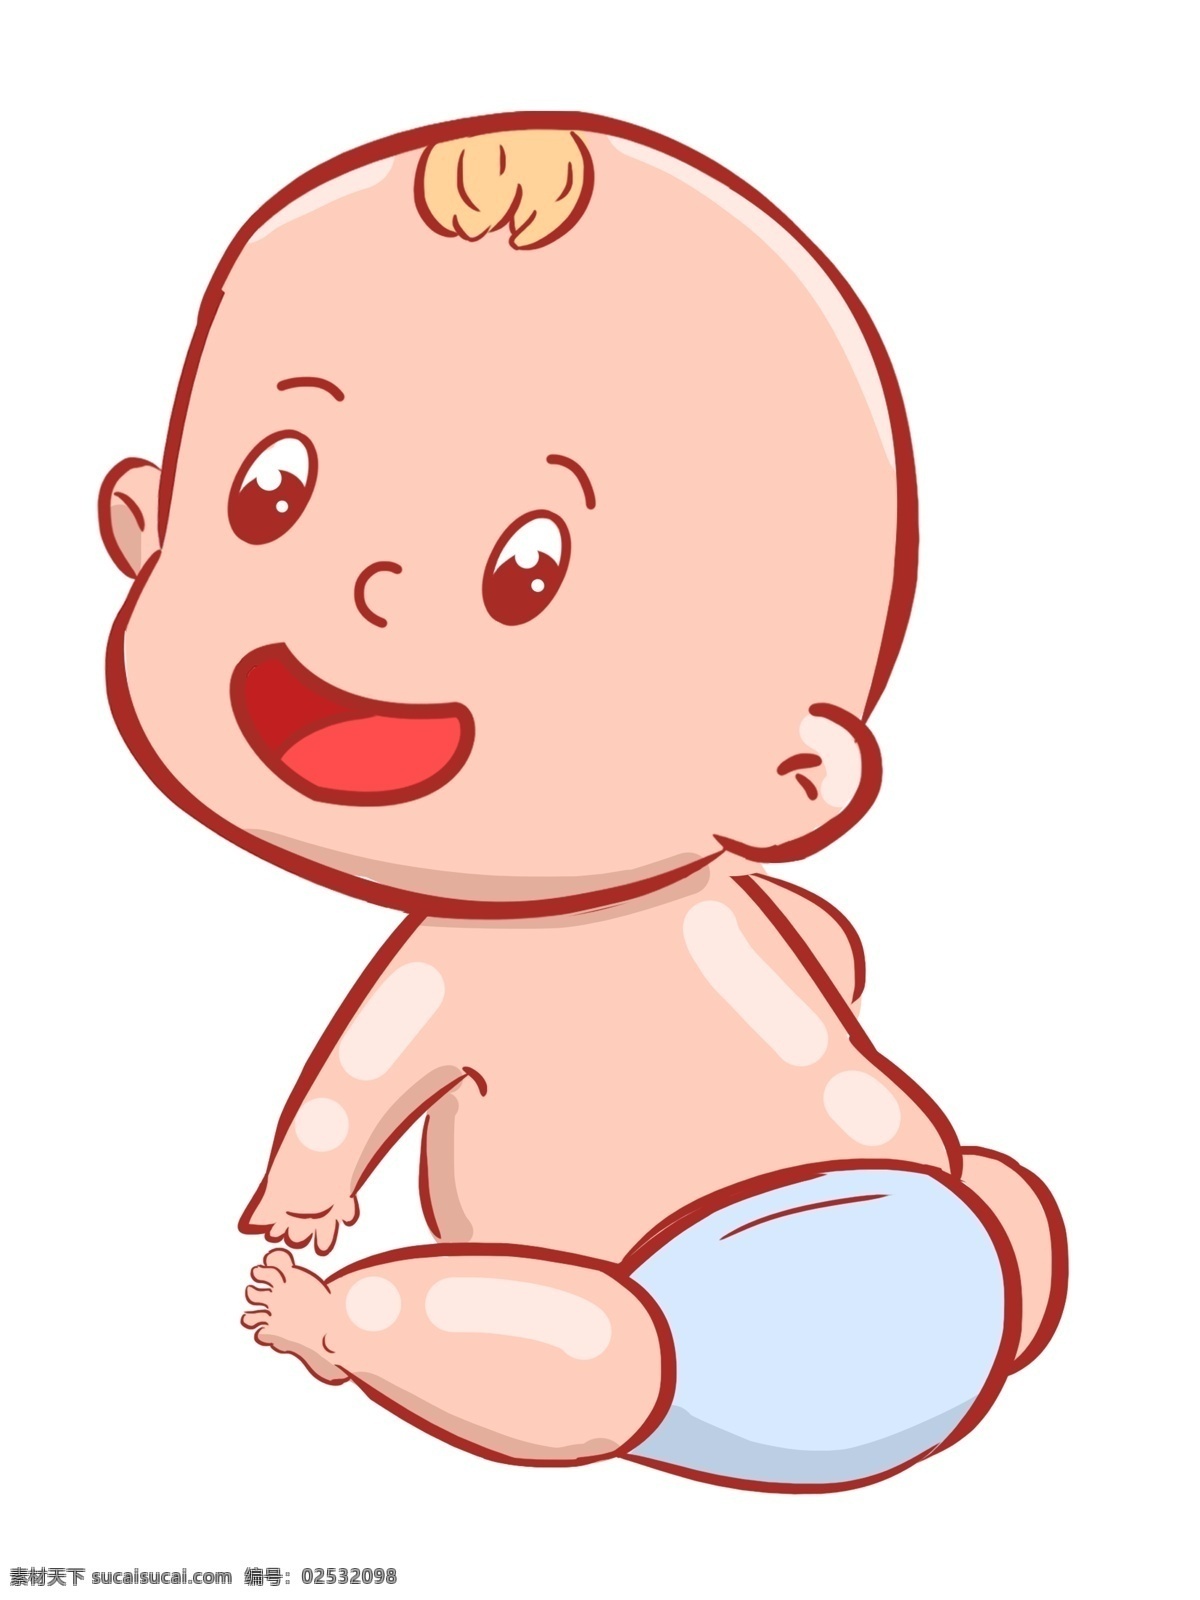 可爱 婴儿 装饰 插画 可爱的婴儿 开心的婴儿 玩耍的婴儿 婴儿装饰 婴儿插画 立体婴儿 卡通婴儿